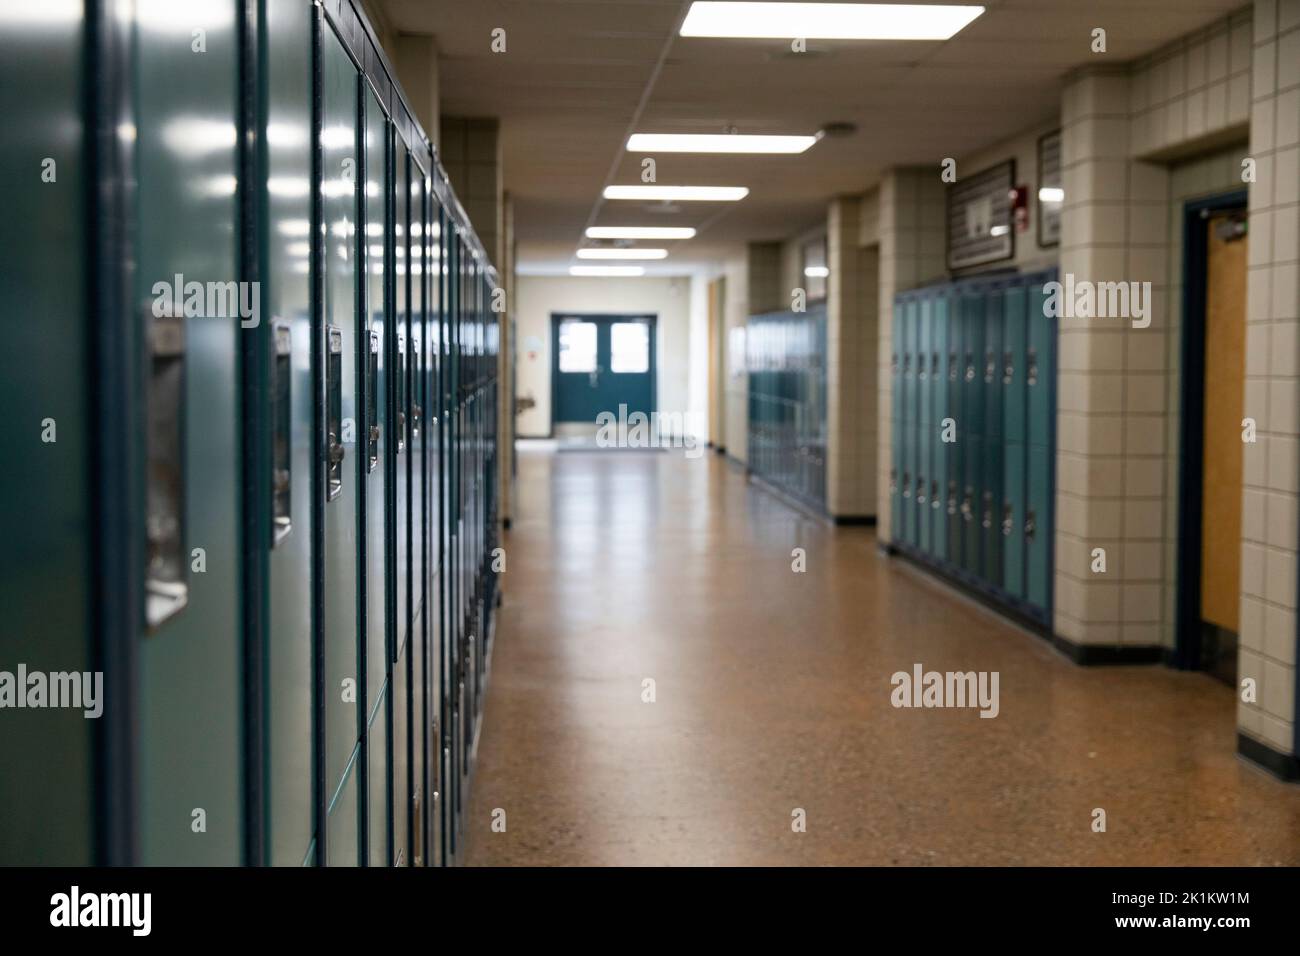 empty school locker